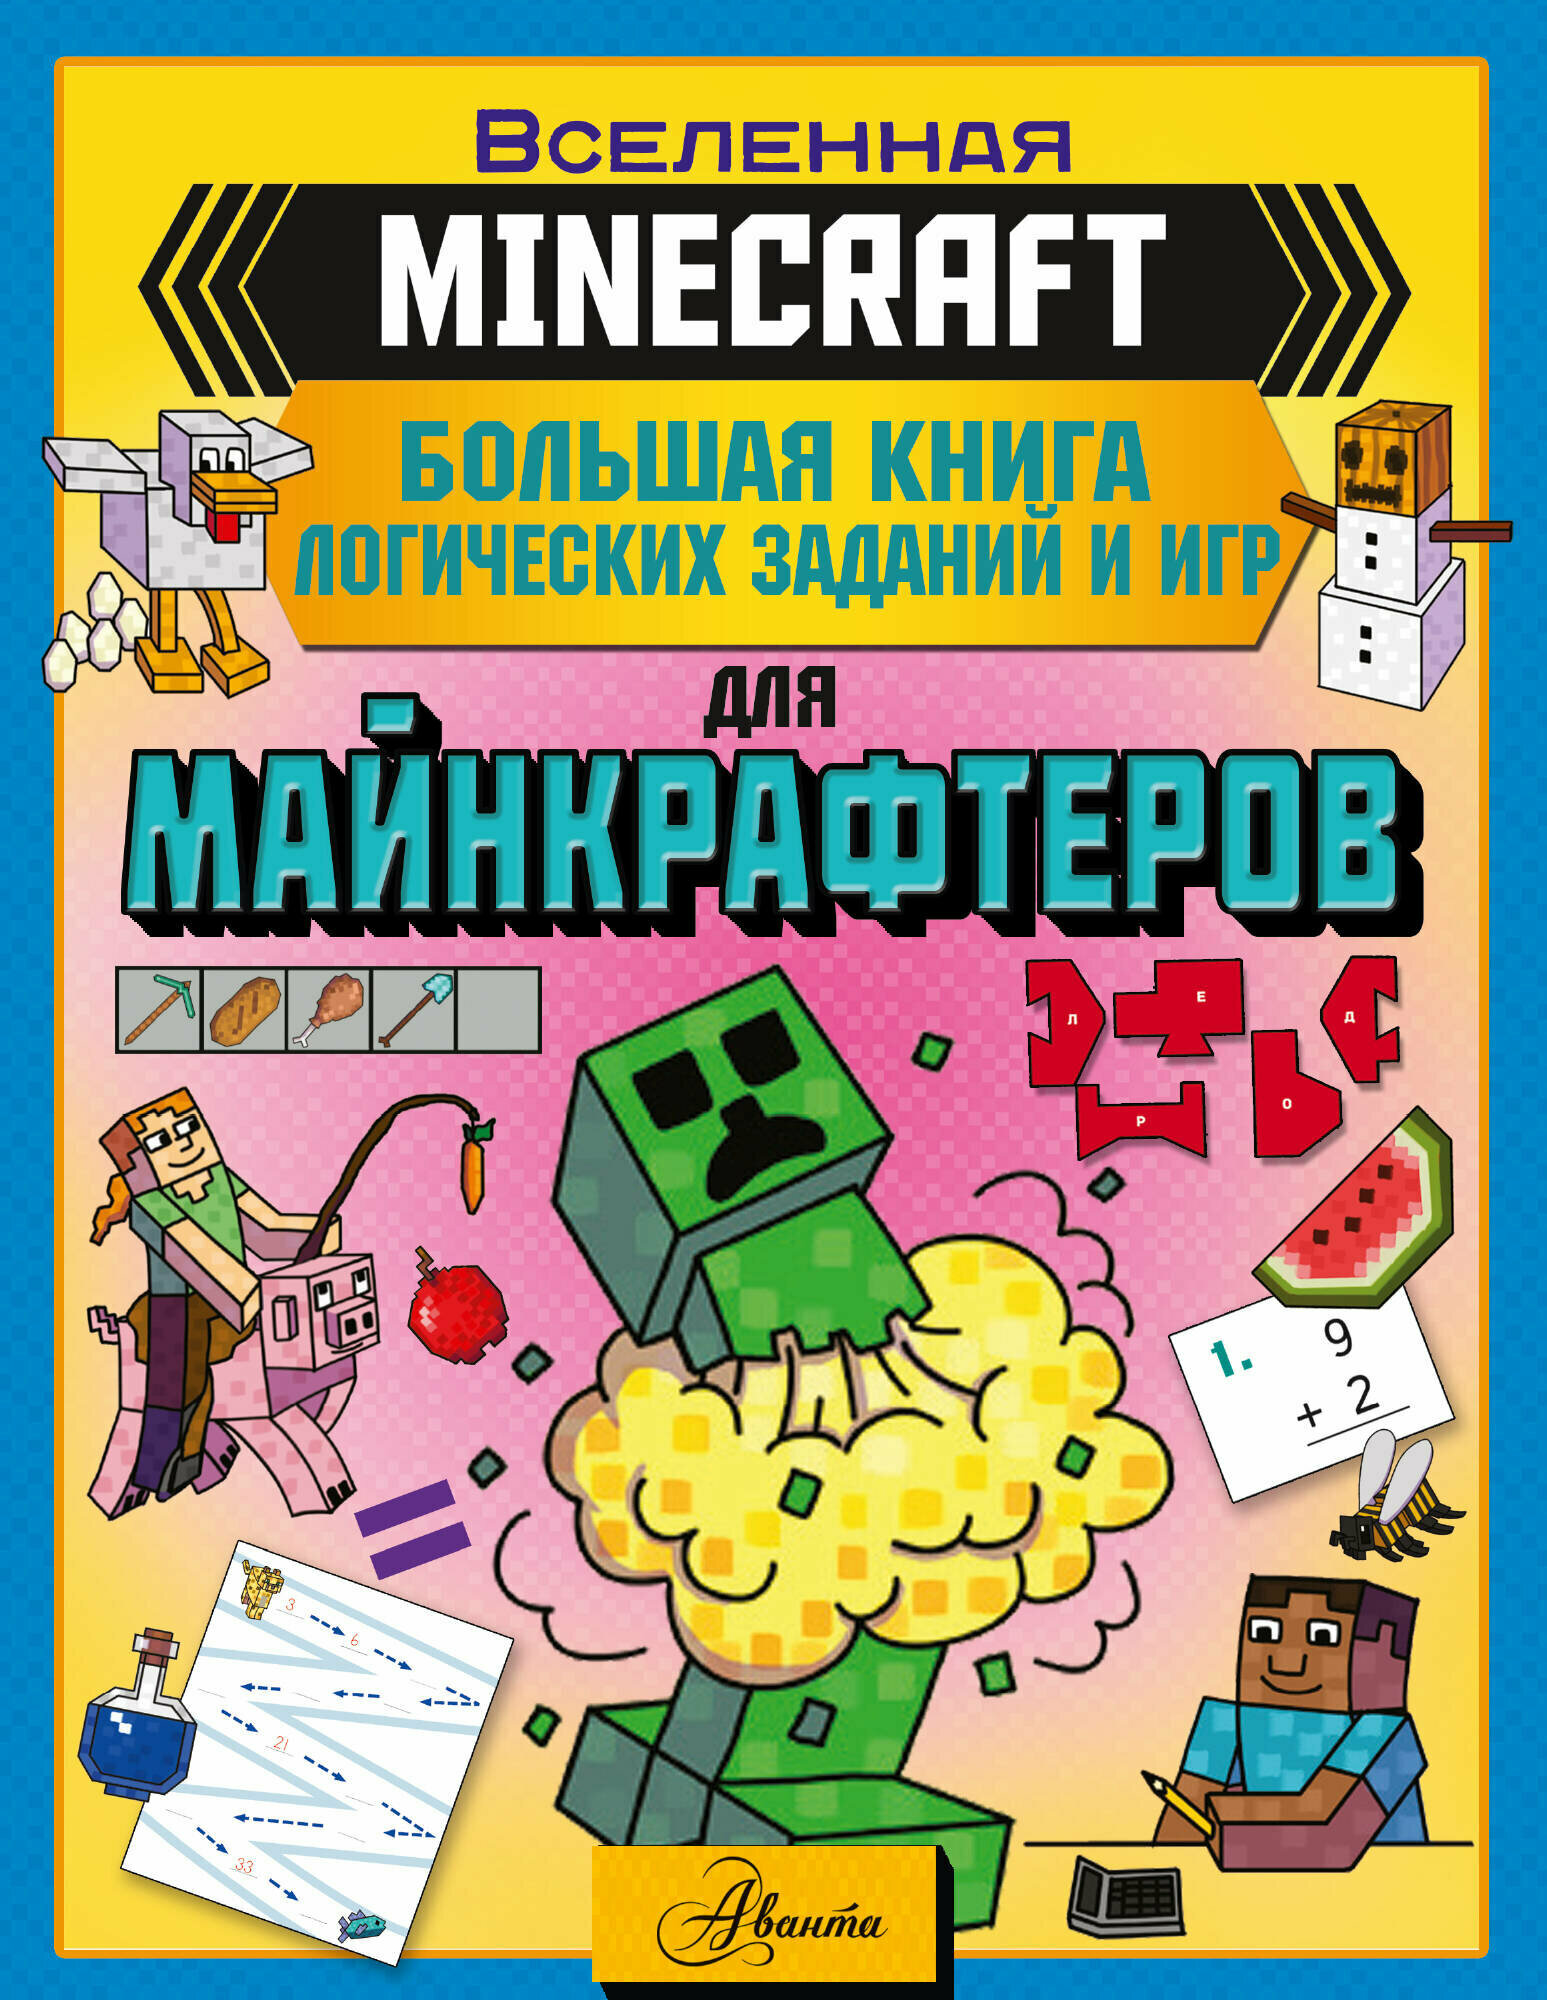 MINECRAFT. Большая книга логических заданий и игр для майнкрафтеров Брэк А.